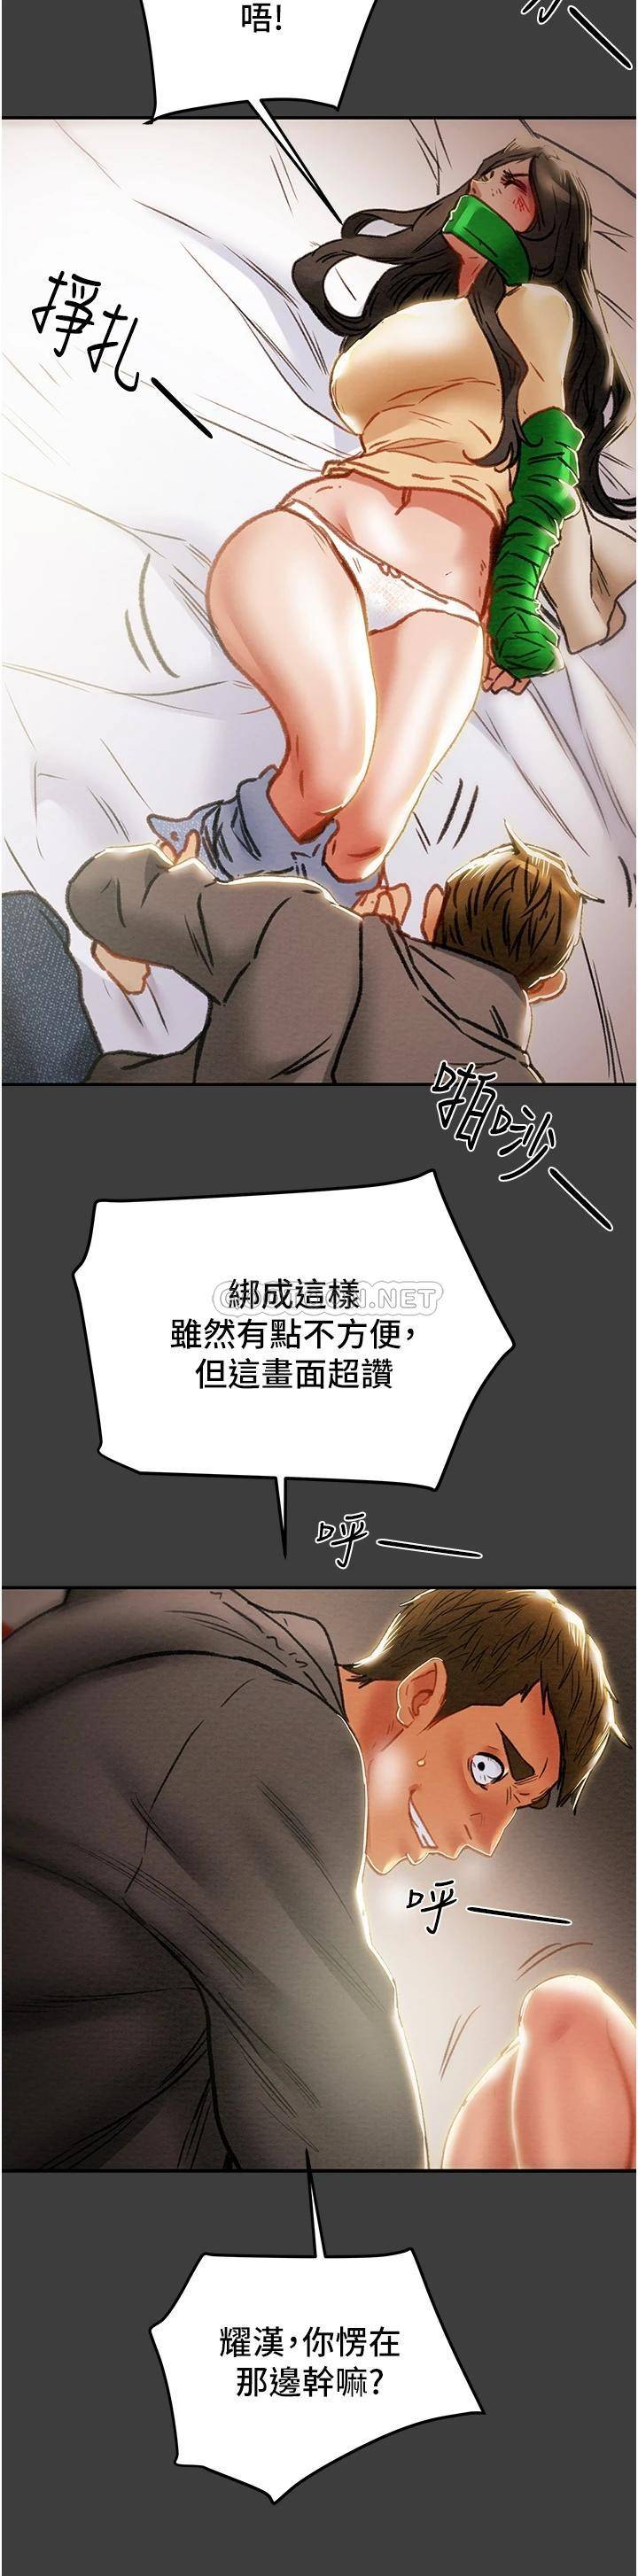 韩国污漫画 純情女攻略計劃 第78话妍霏忠于欲望的告白 54